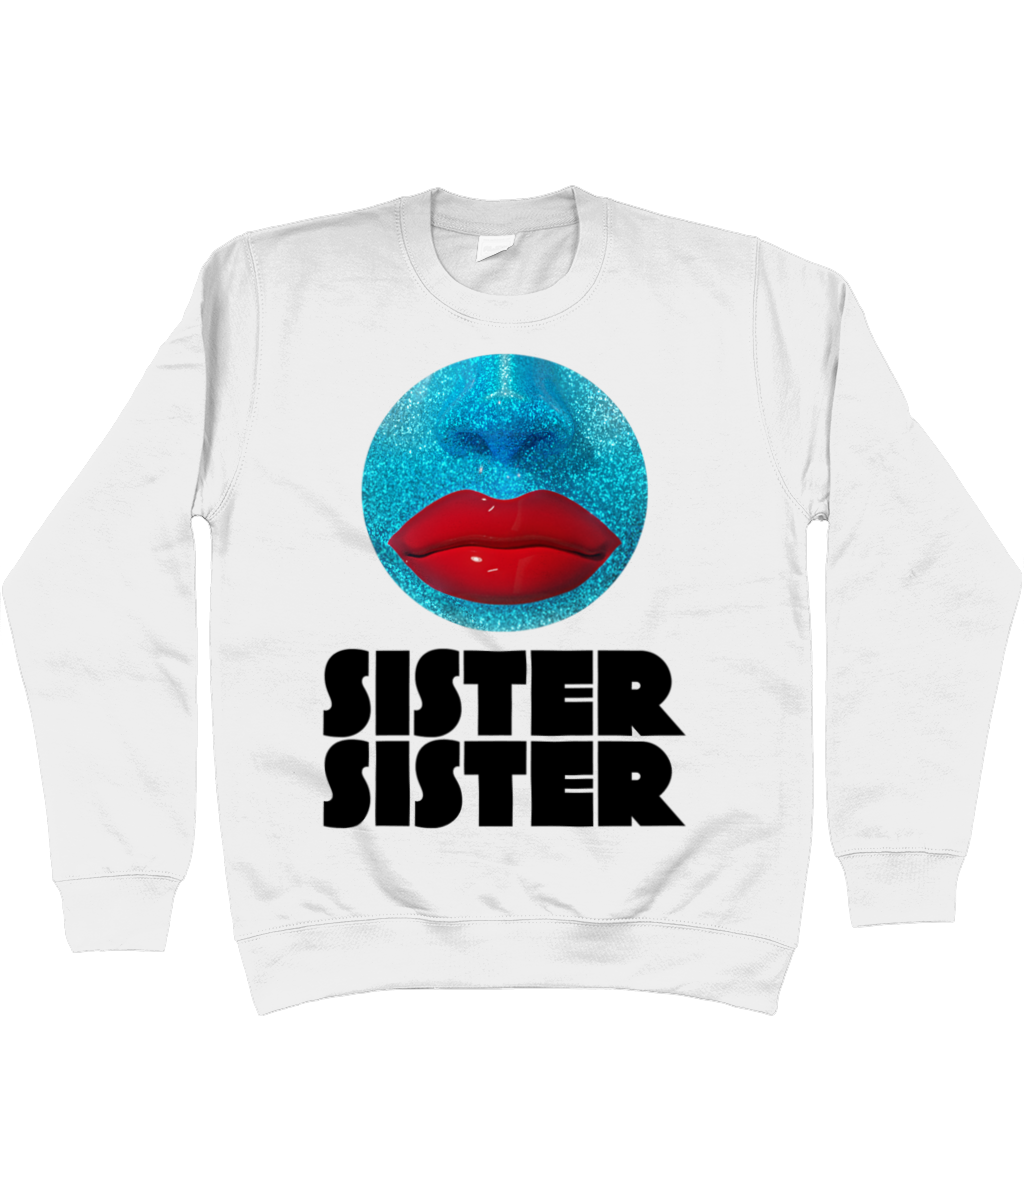 Sister Sister - Orb Sweatshirt